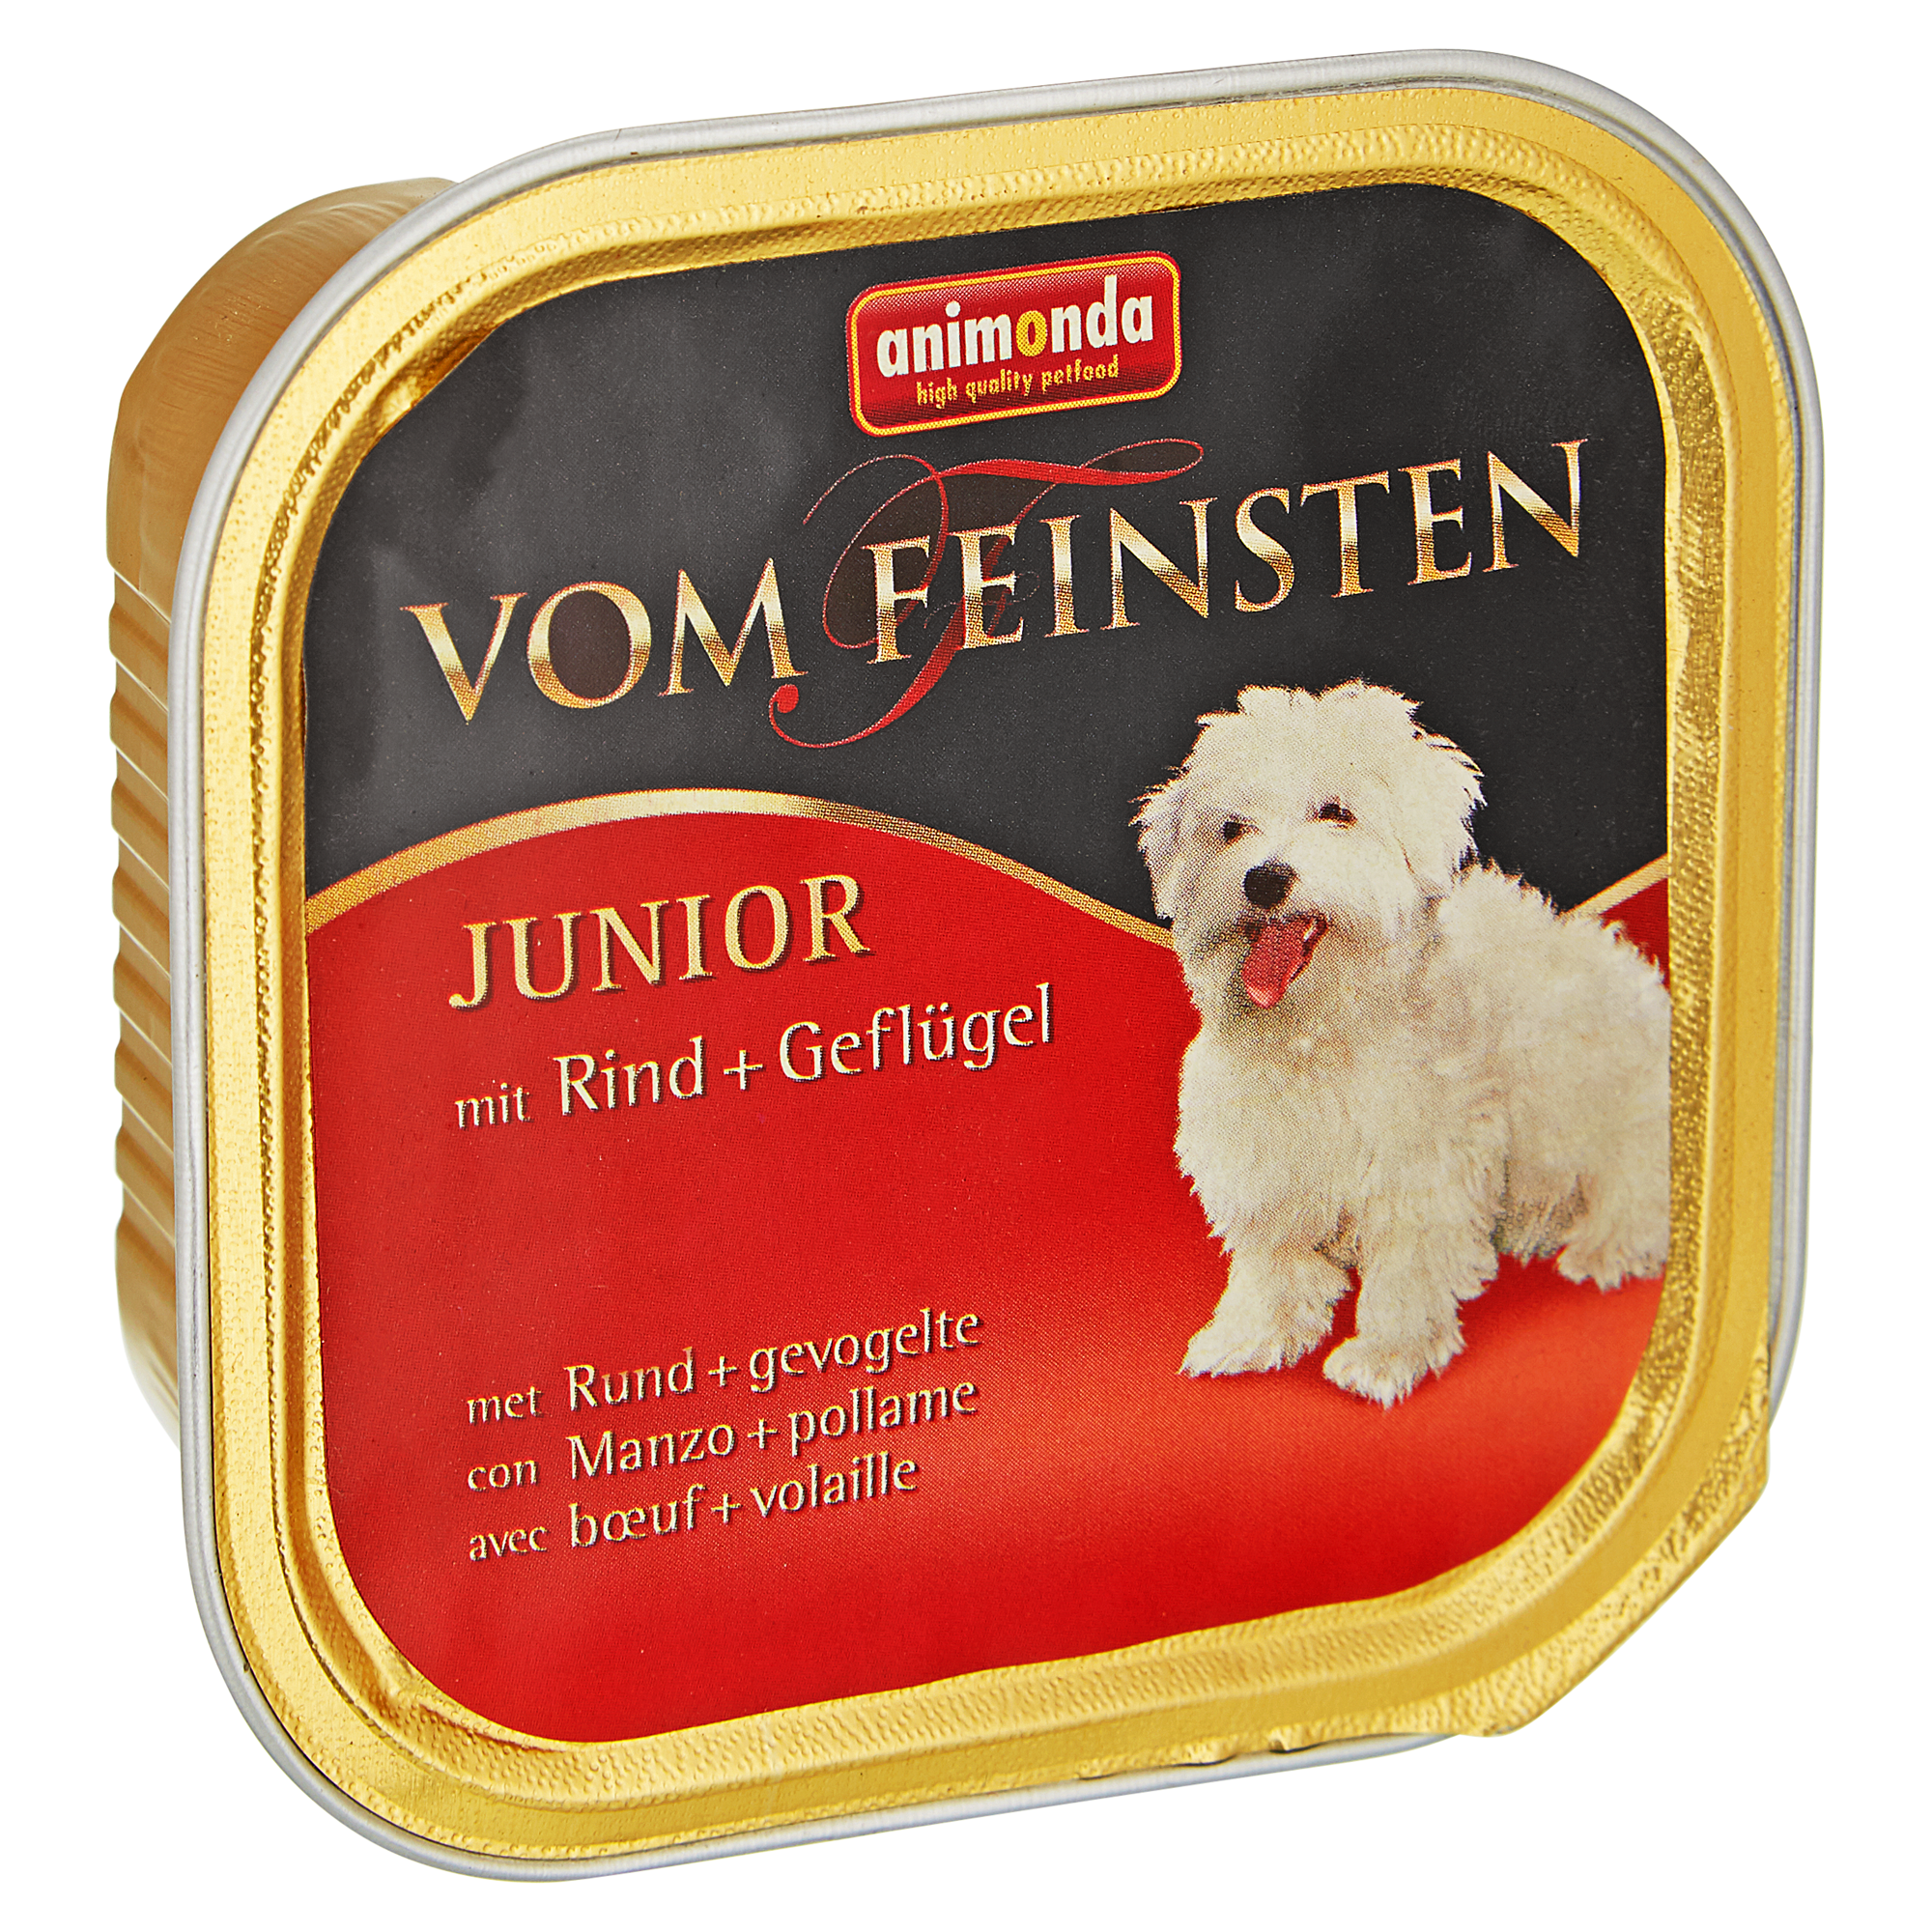 Hundenassfutter "Vom Feinsten" Junior mit Rind/Geflügel 150 g + product picture